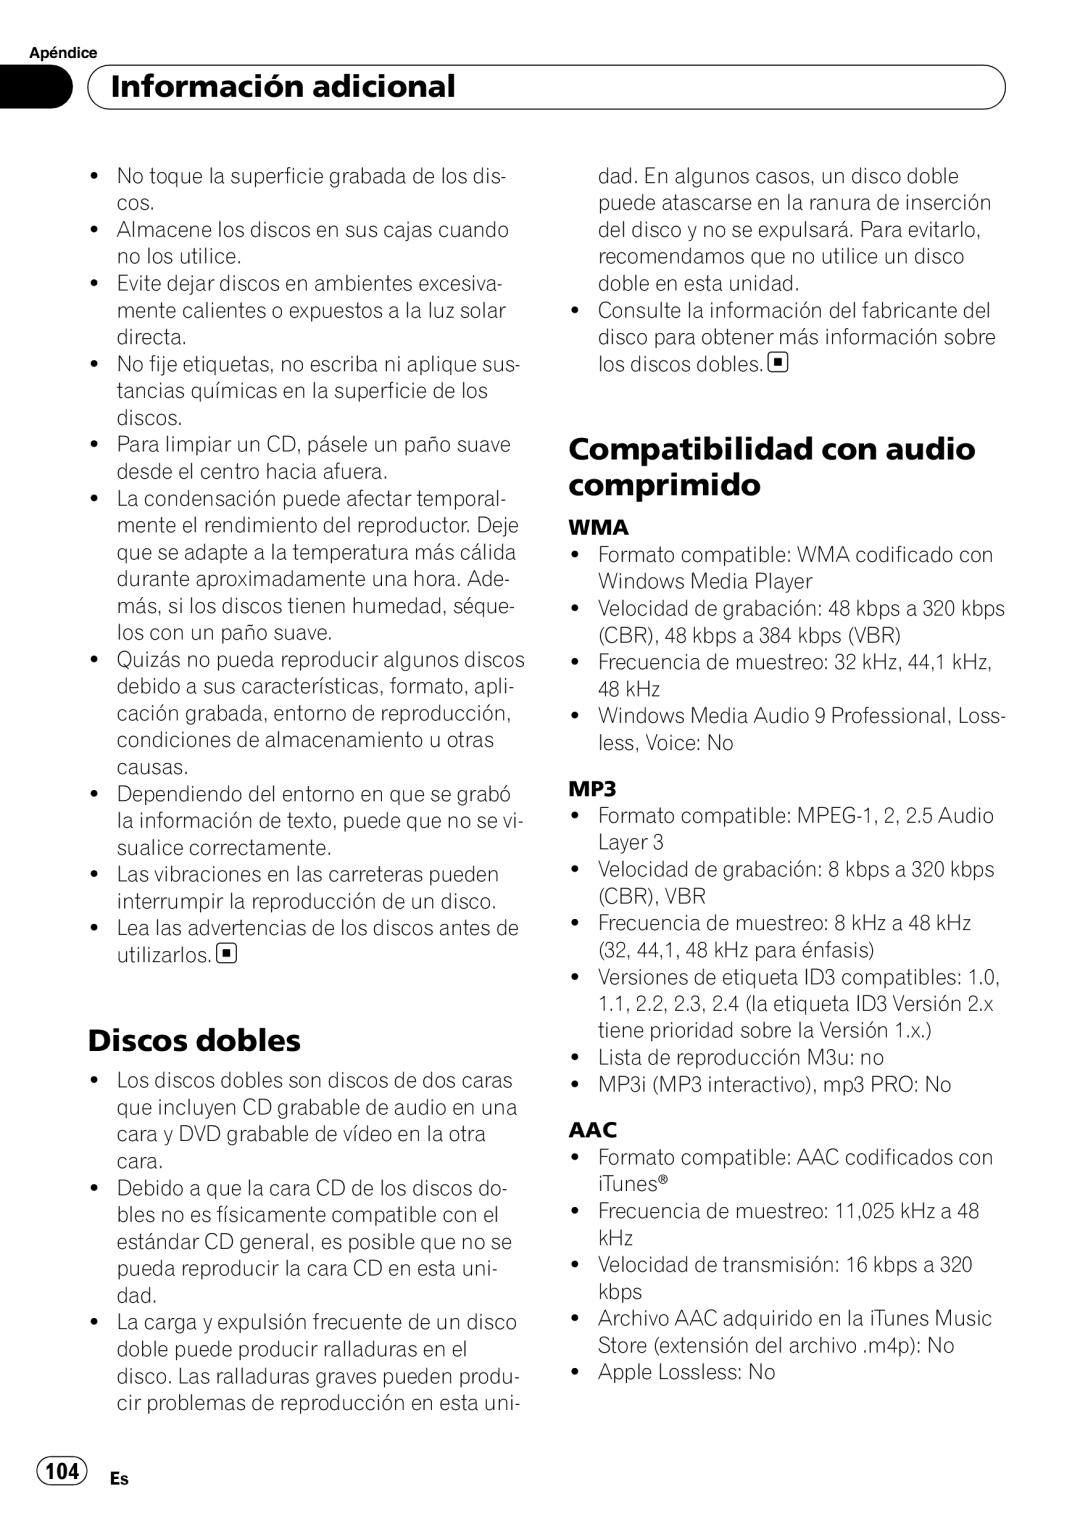 Pioneer DEH-P4050UB operation manual Discos dobles, Compatibilidad con audio comprimido, 104 Es, Información adicional 